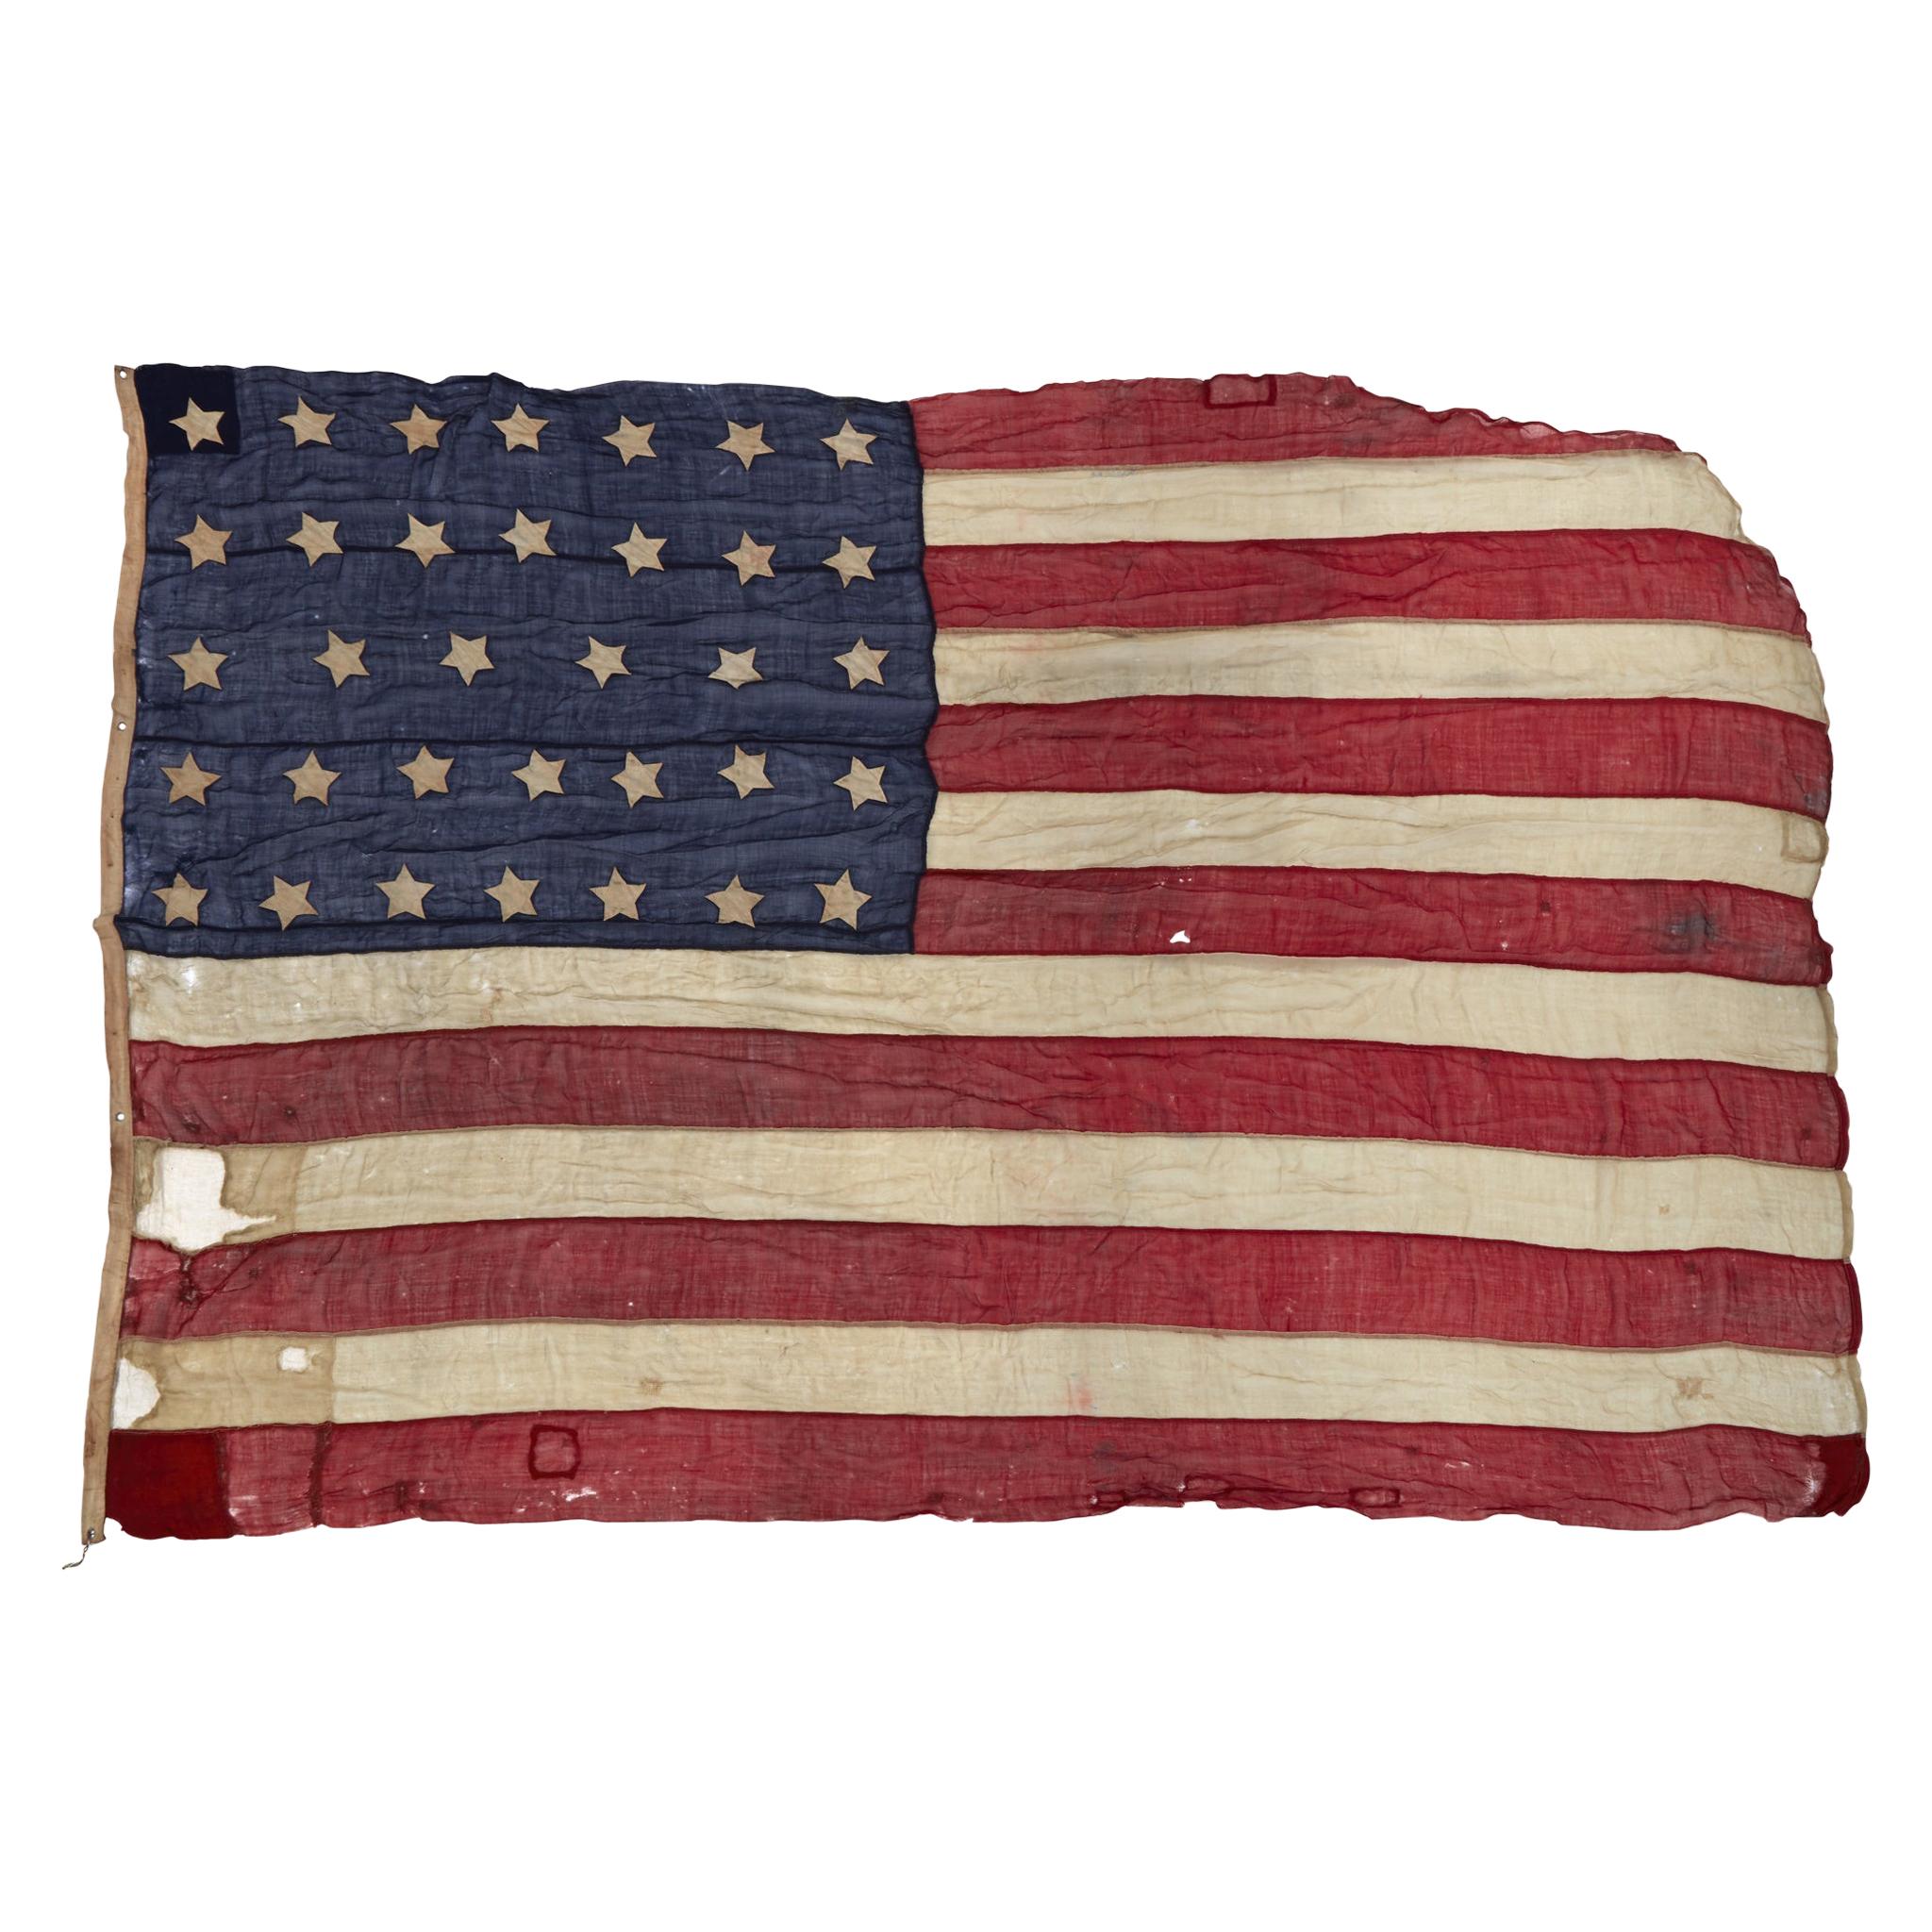 34-Star Civil-War Flag, Celebrating Kansas Statehood, 1861